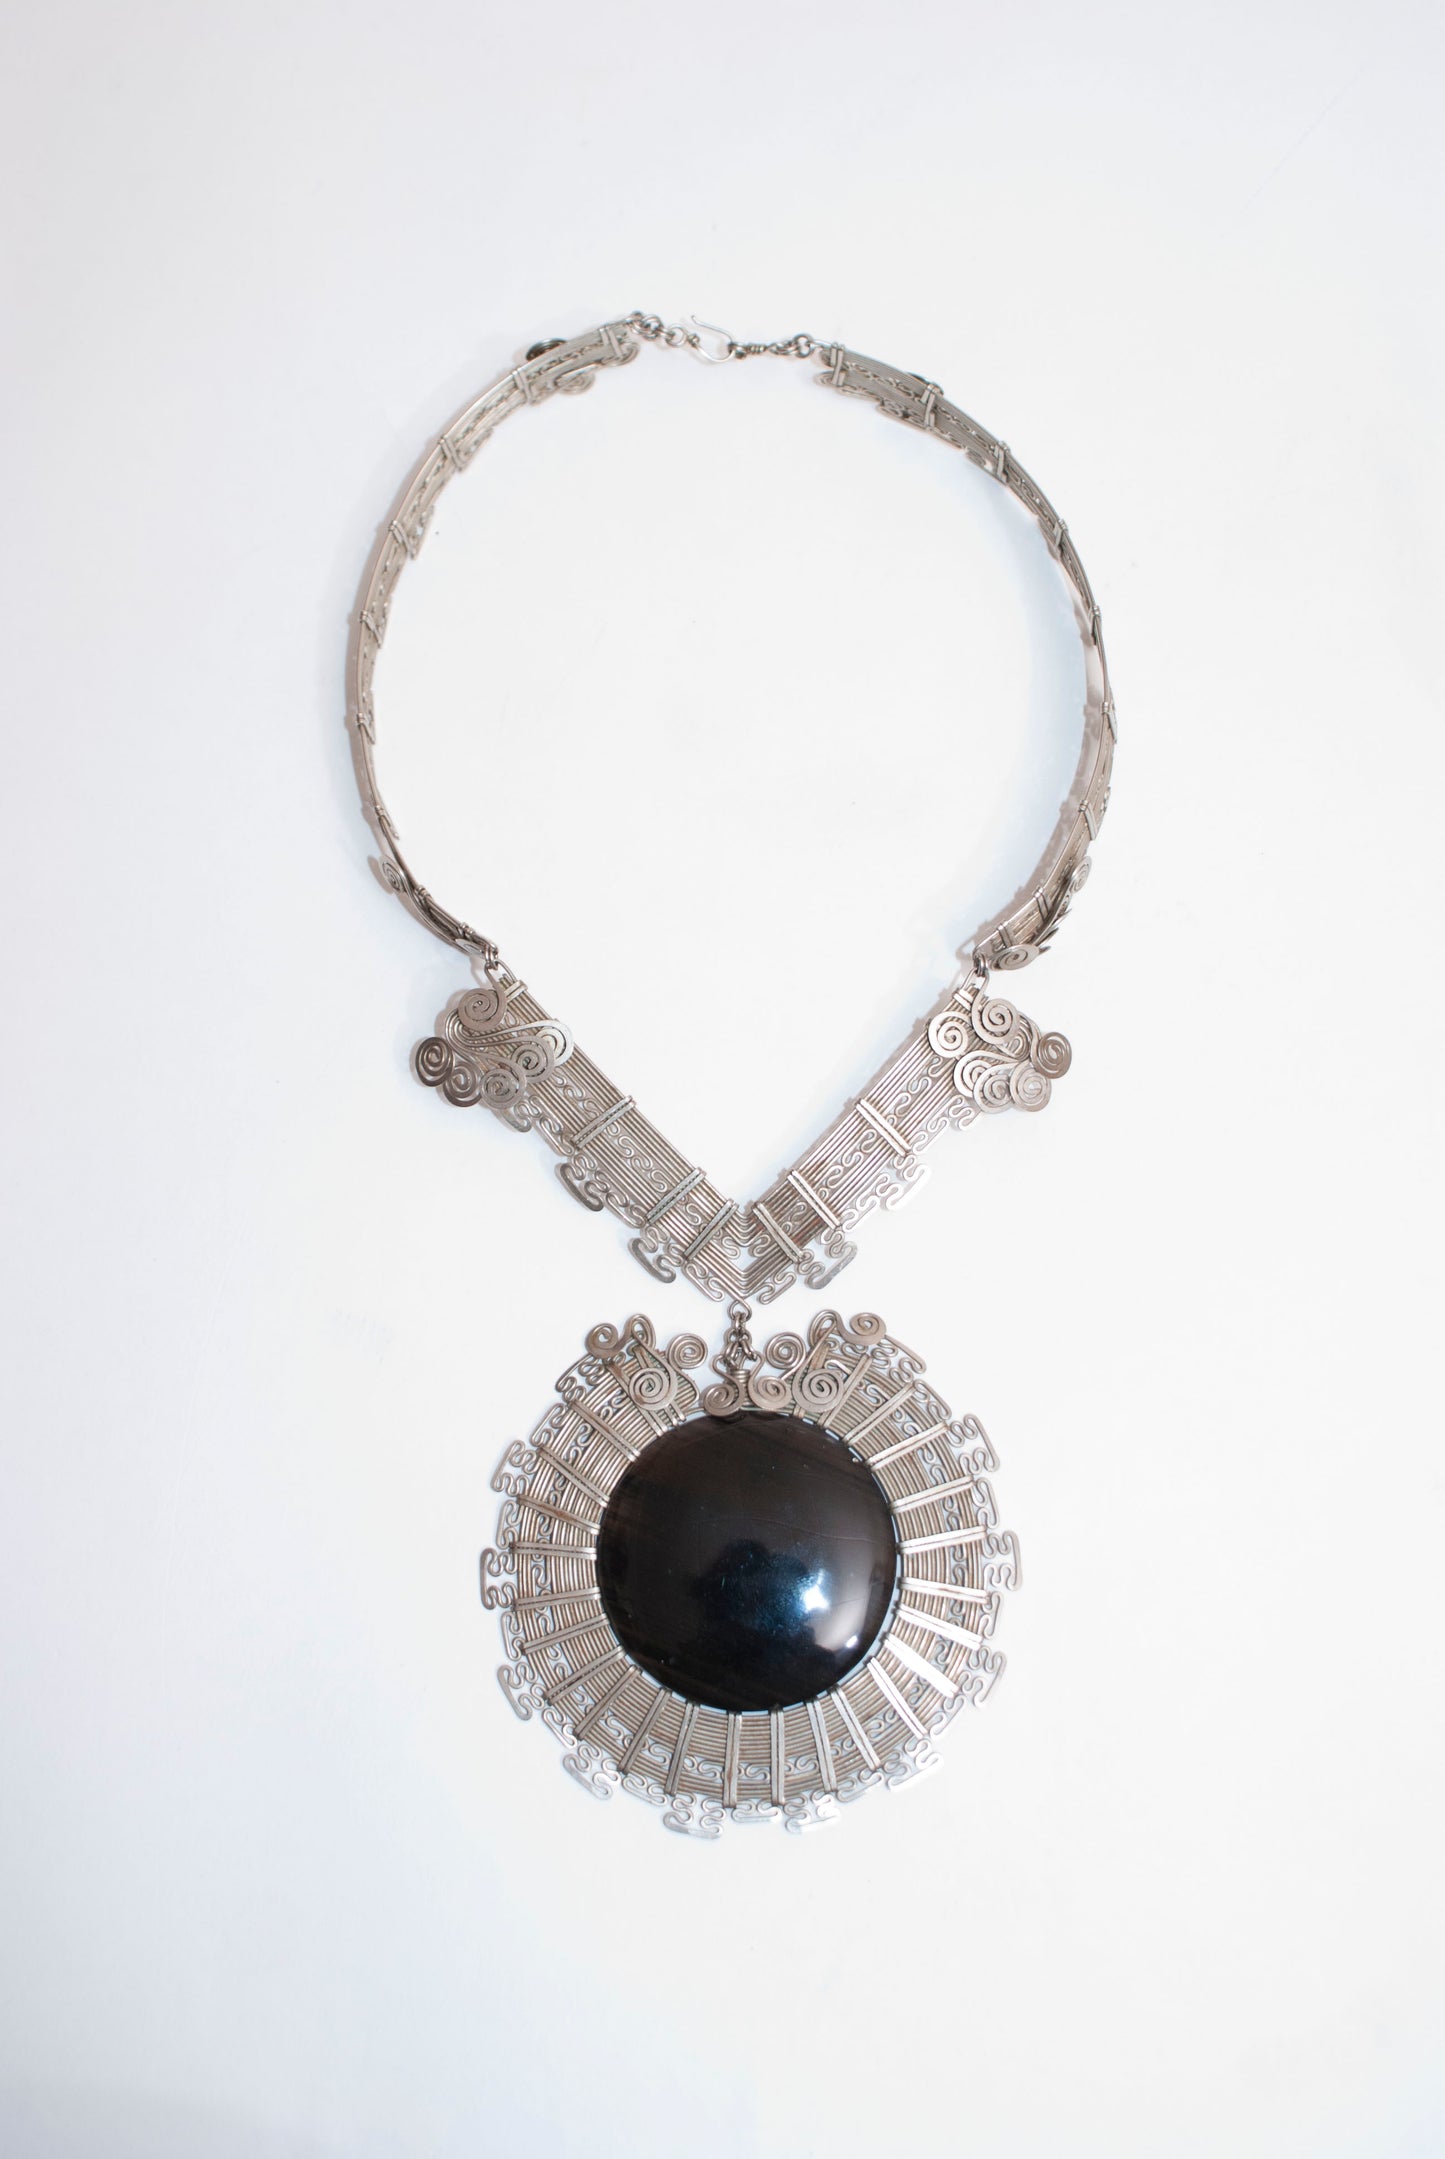 Alpaca silver and gemstone necklace